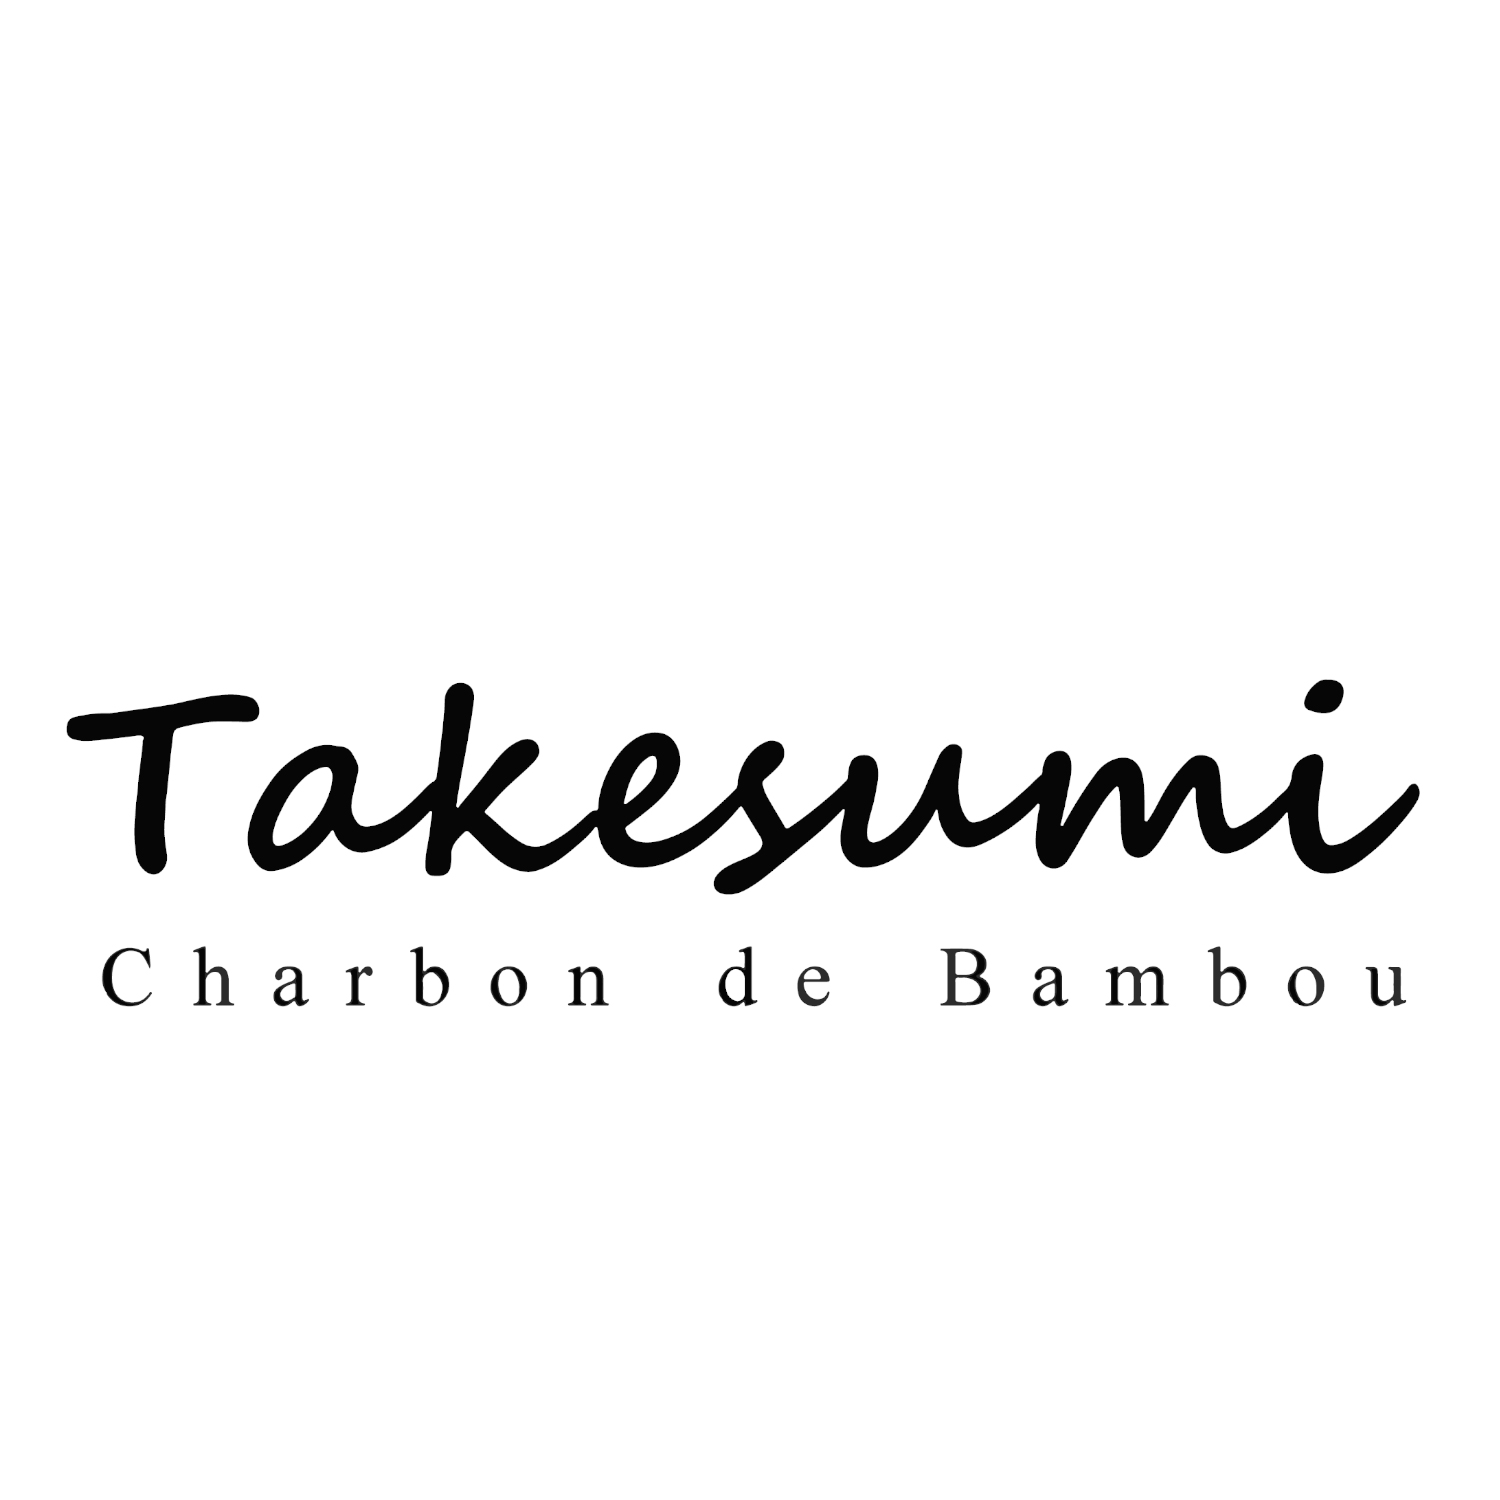 Bâton Charbon Takesumi de bambou x3 - Orinko